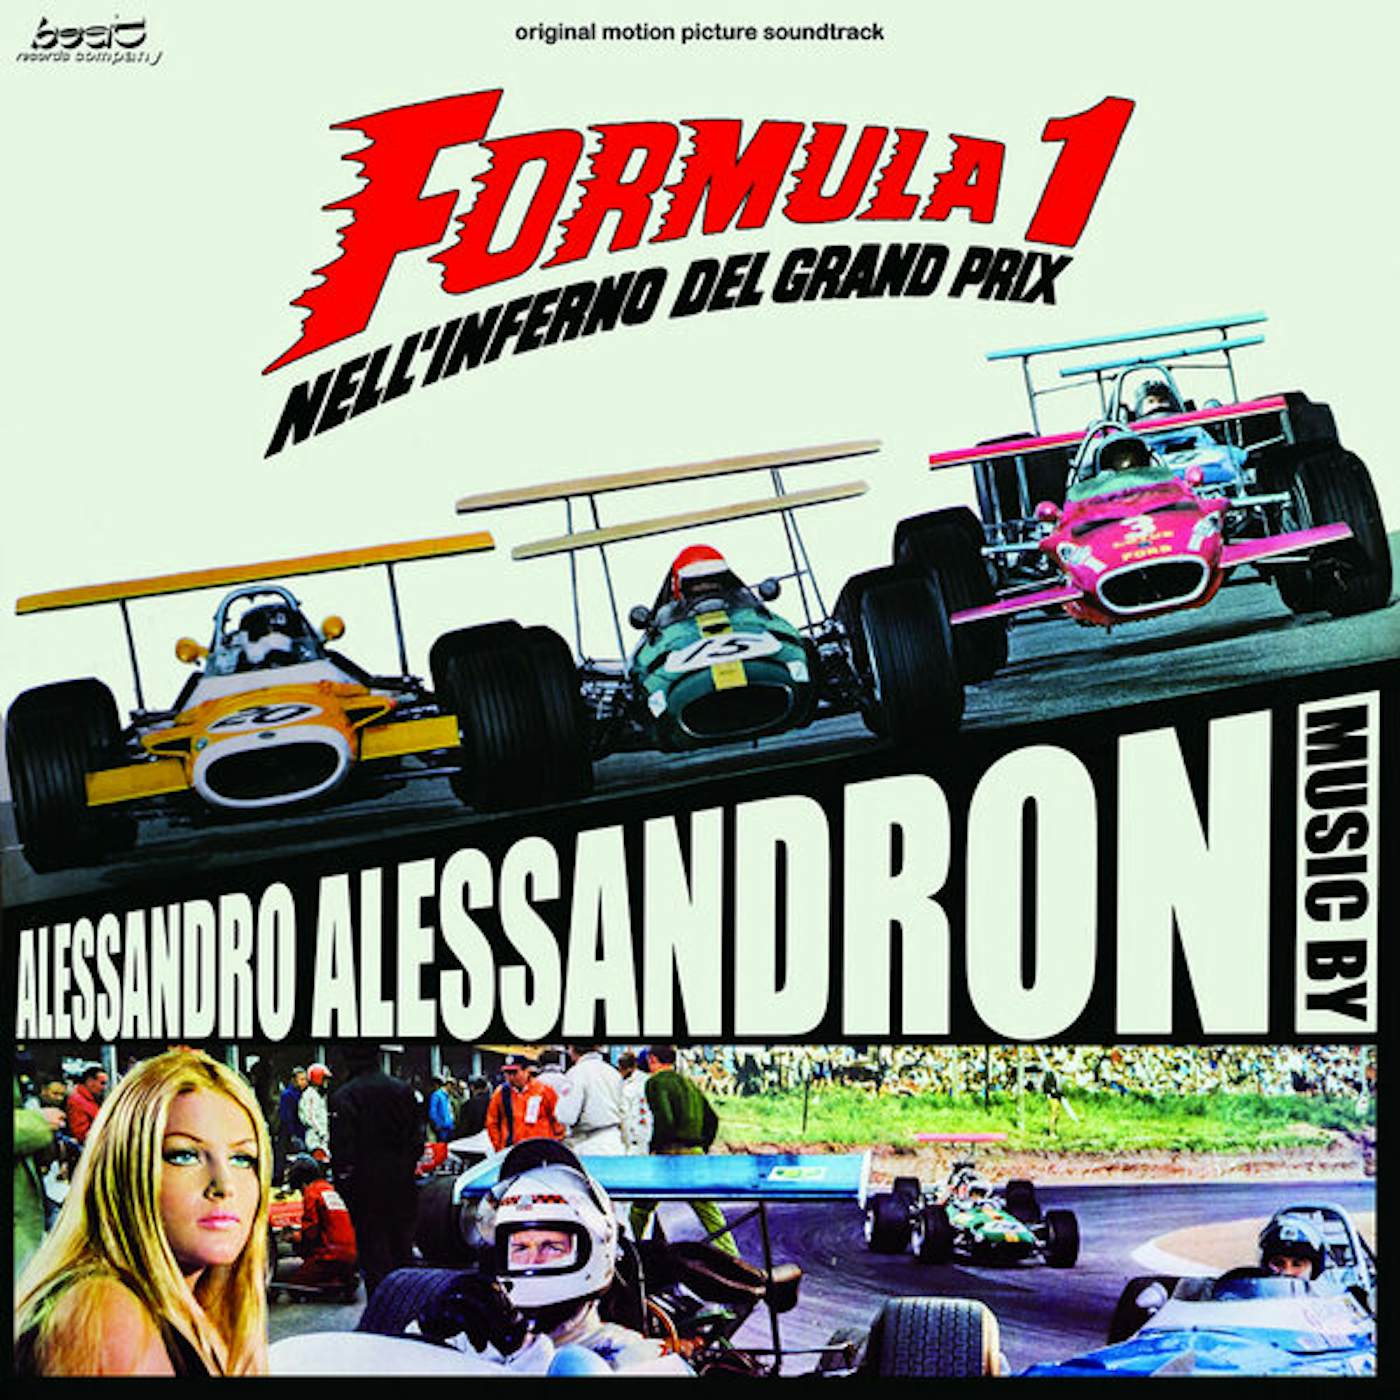 Alessandro Alessandroni FORMULA 1 NELL INFERNO DEL GRAND PRIX Vinyl Record